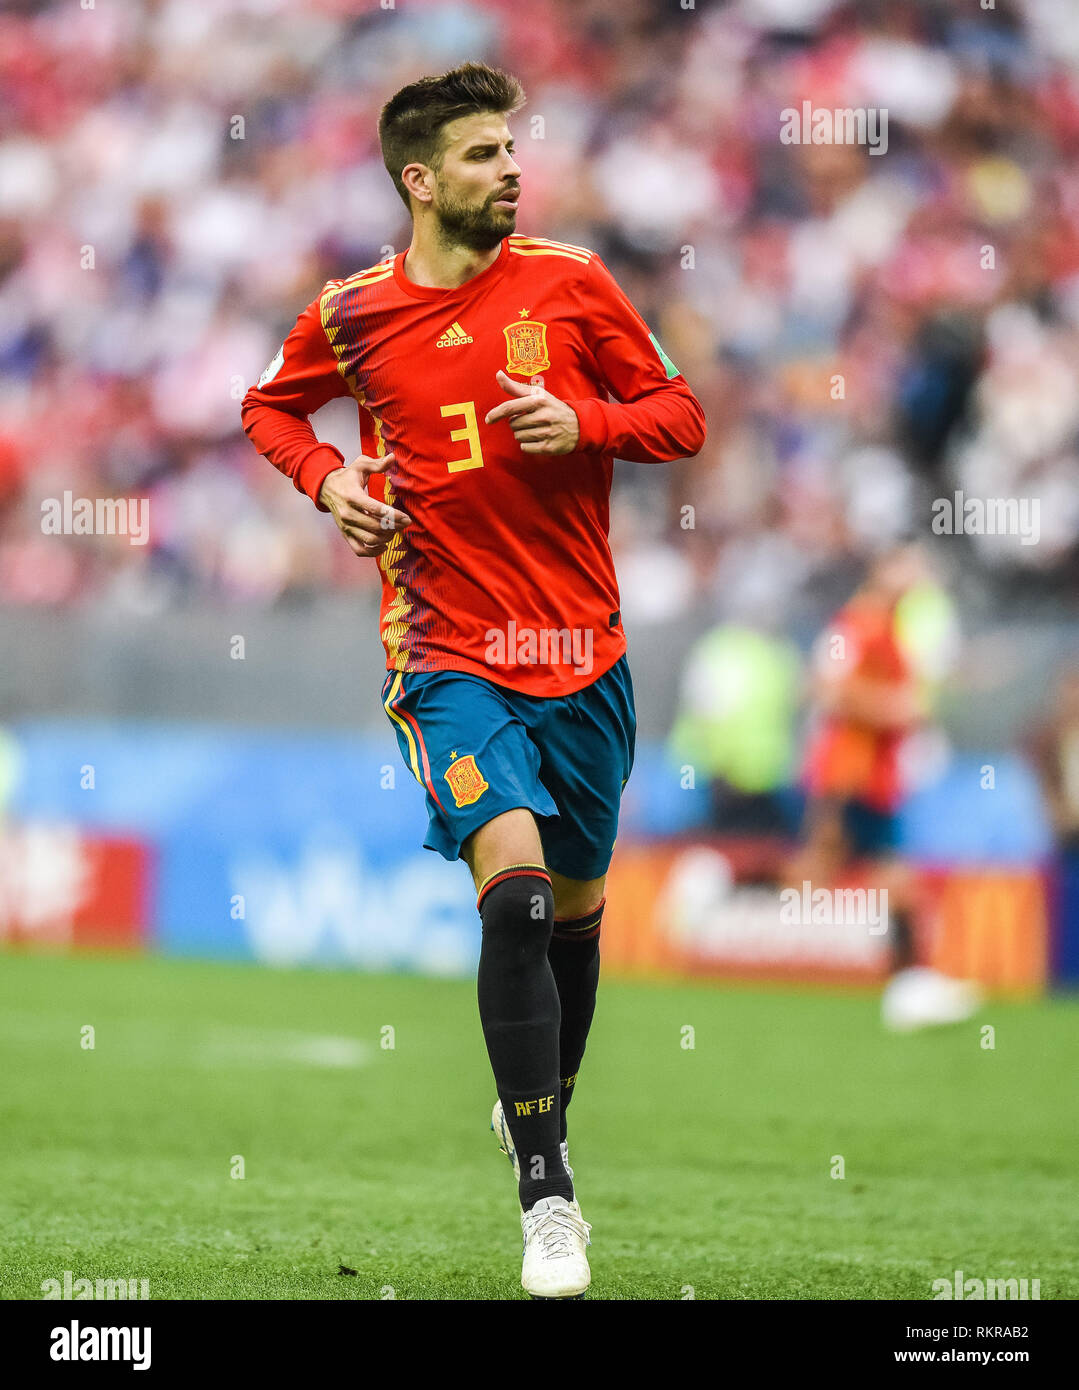 Moscou, Russie - 1 juillet 2018. L'équipe d'Espagne de football defender Gerard Pique pendant la Coupe du Monde FIFA 2018 ronde de 16 match l'Espagne contre la Russie. Banque D'Images